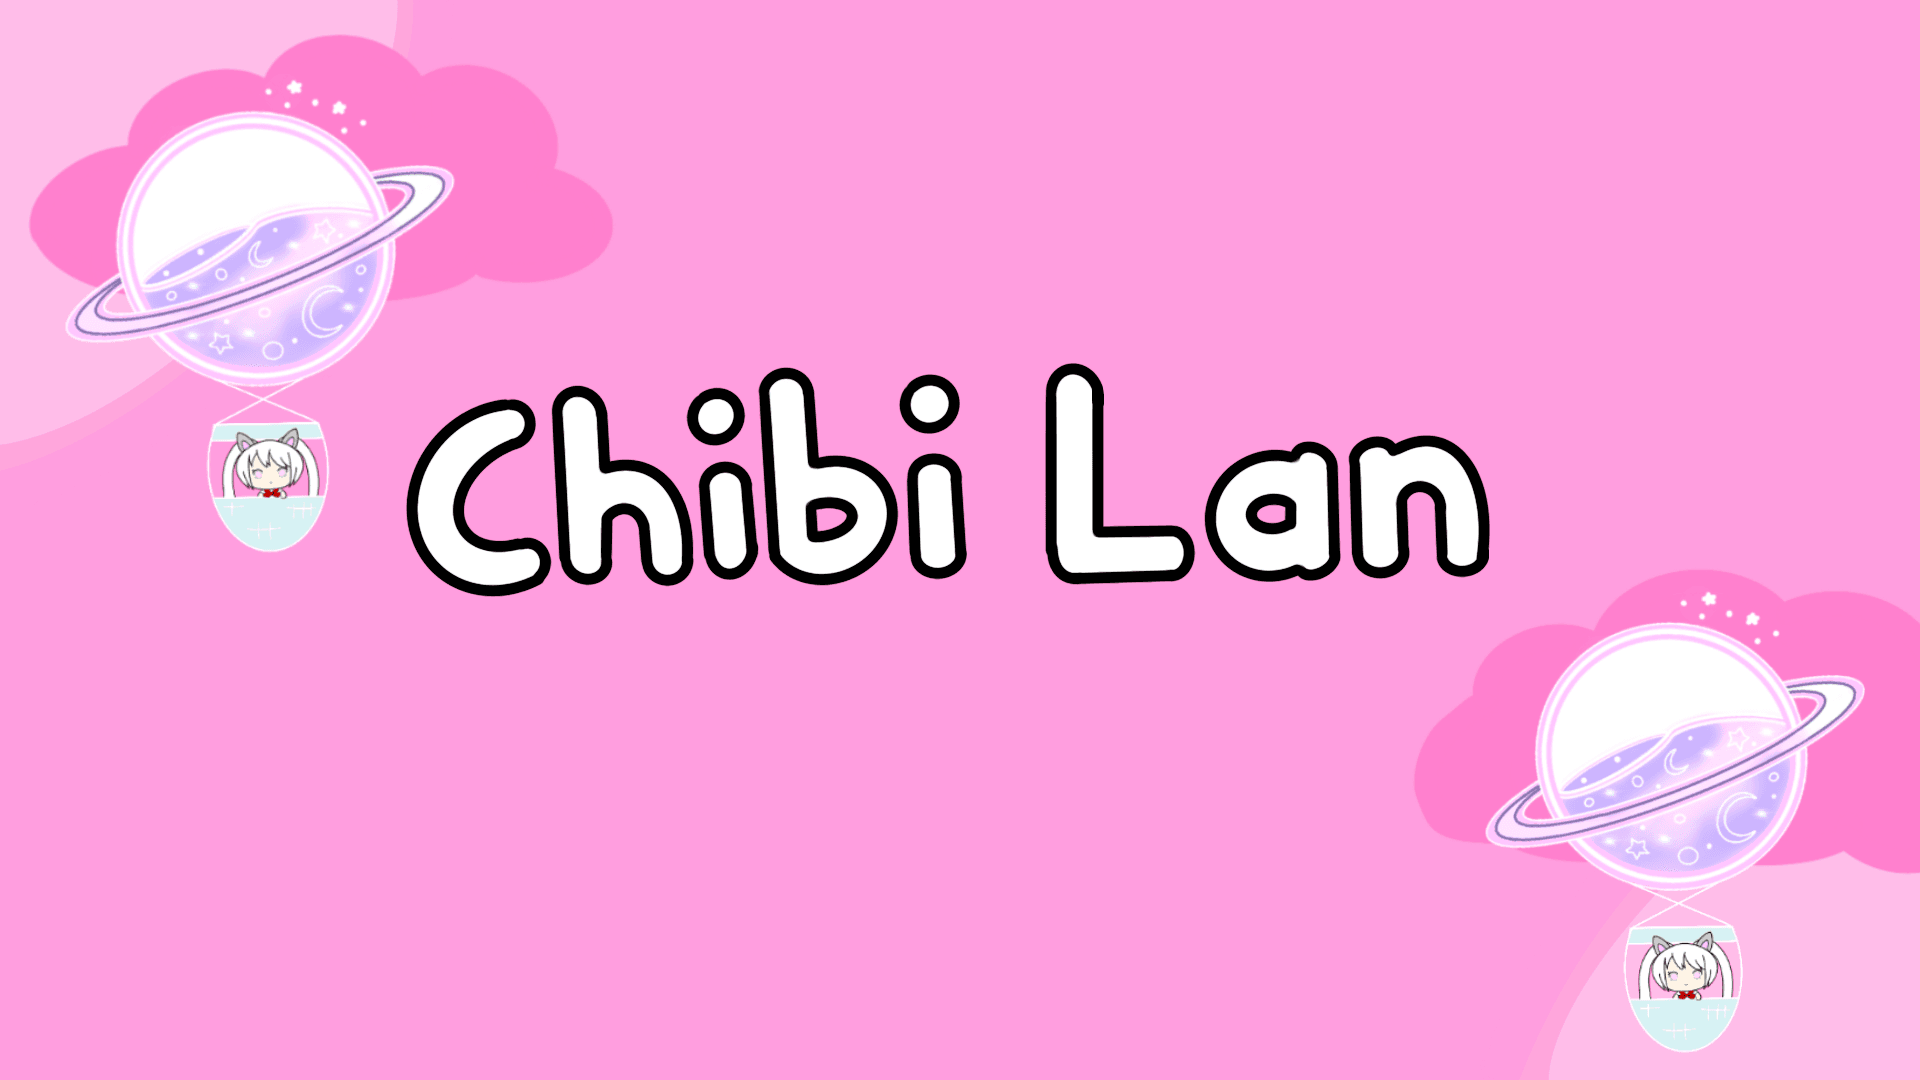 Chibi_Lan banner